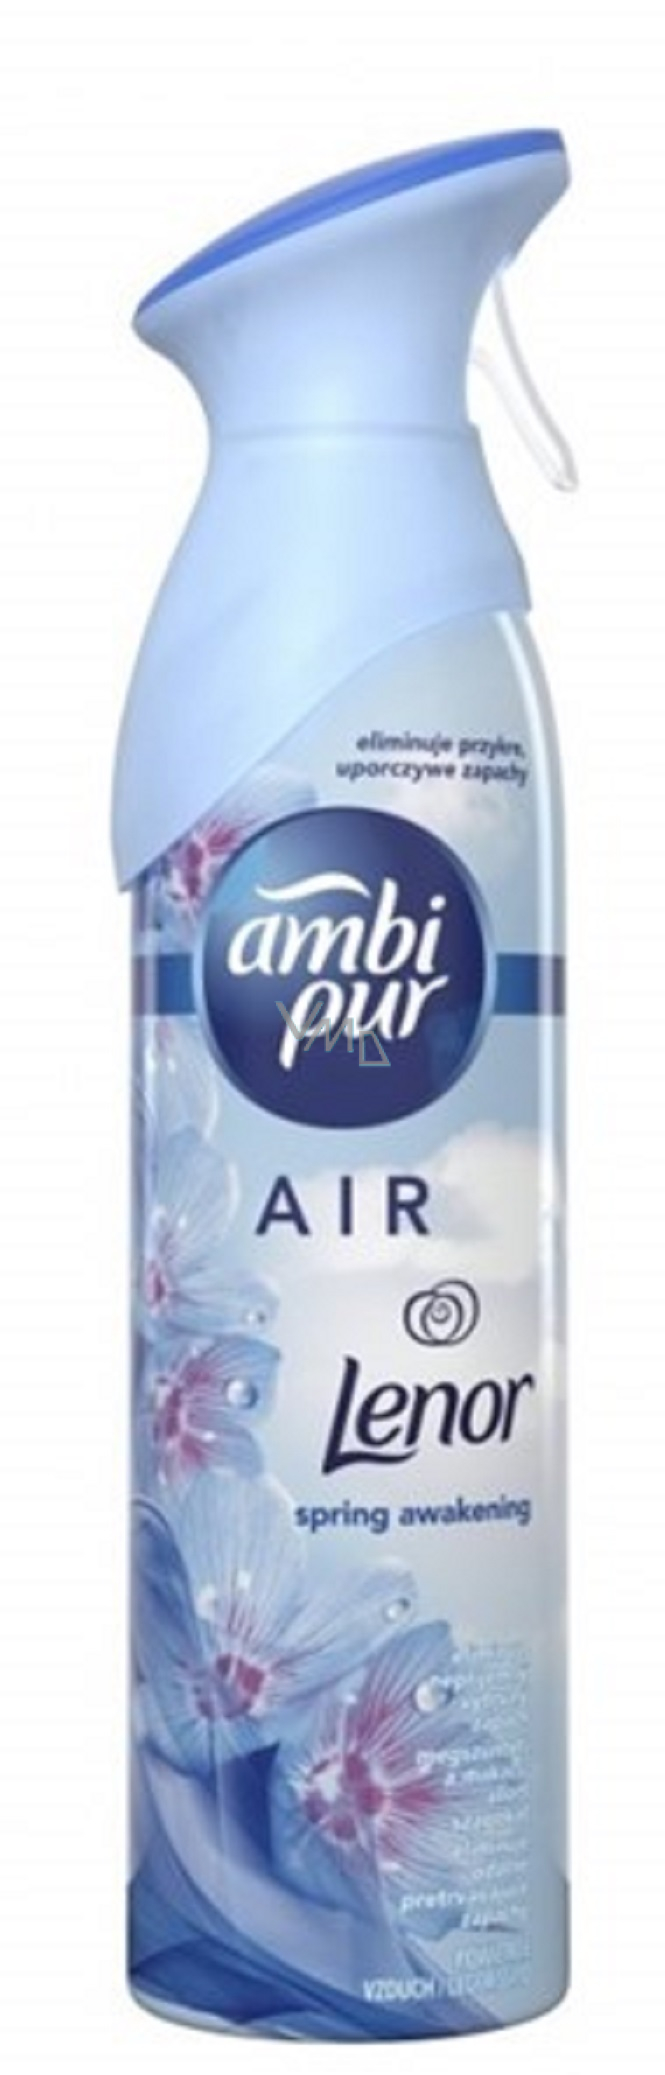 Ambi Pur Air Lenor air freshener spray 300 ml - VMD parfumerie - drogerie